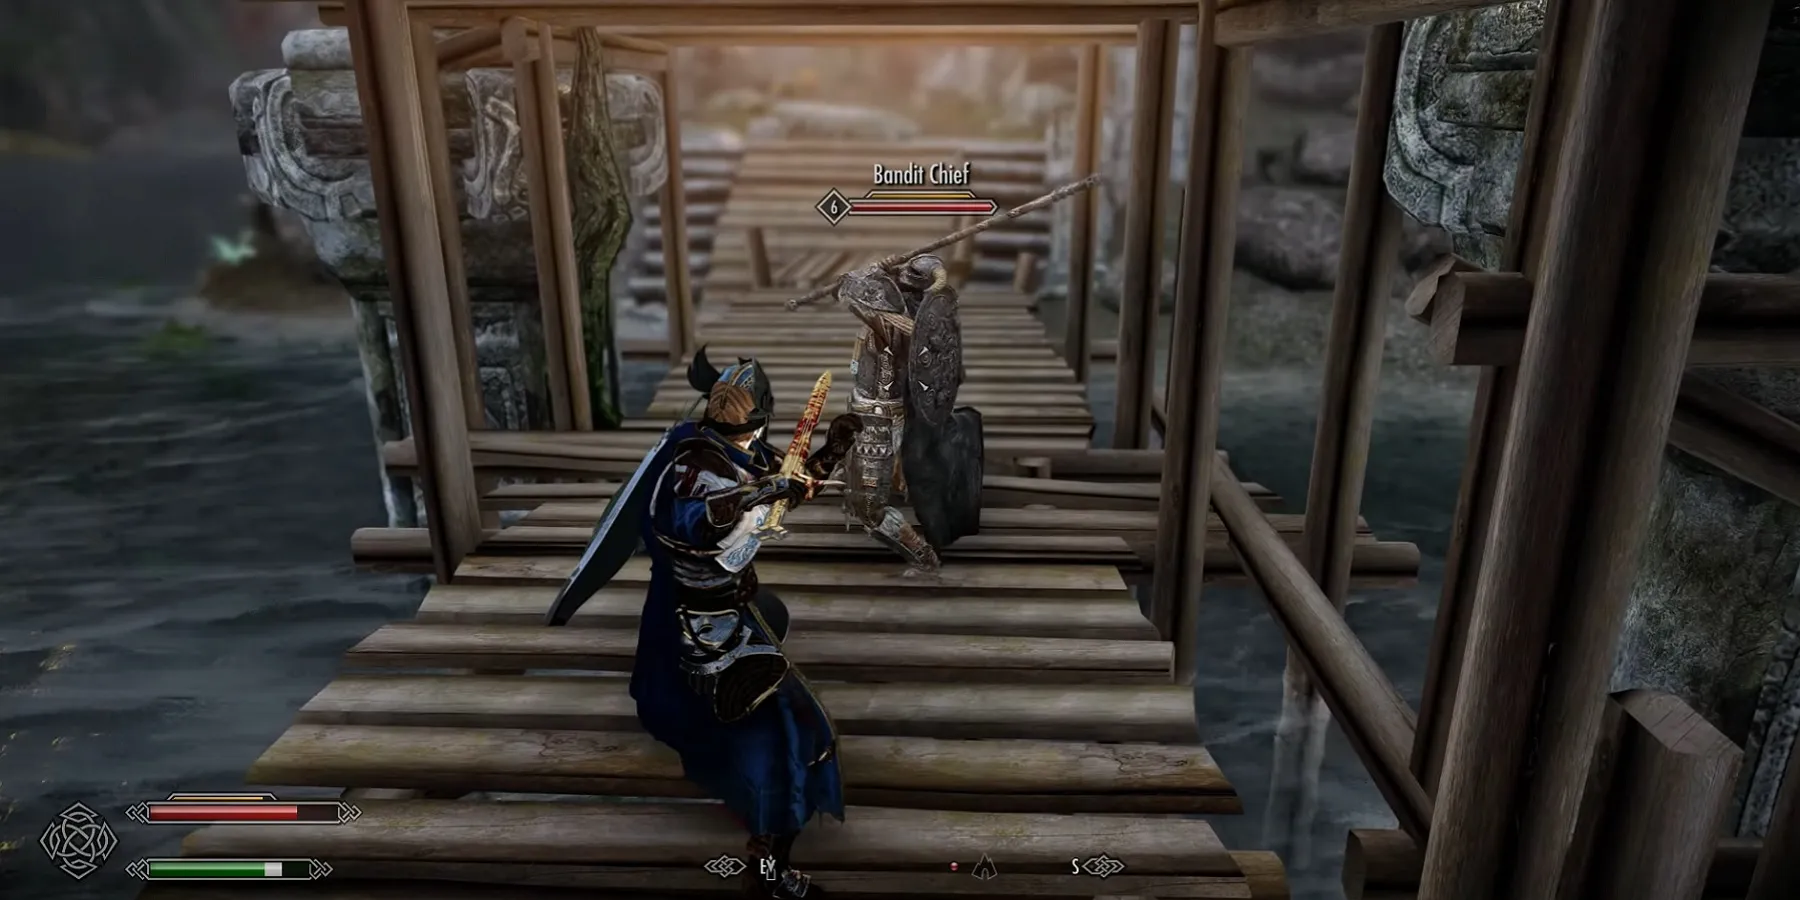 Skyrimで、橋で戦いを始めようとしている2人の姿が映っている画像。